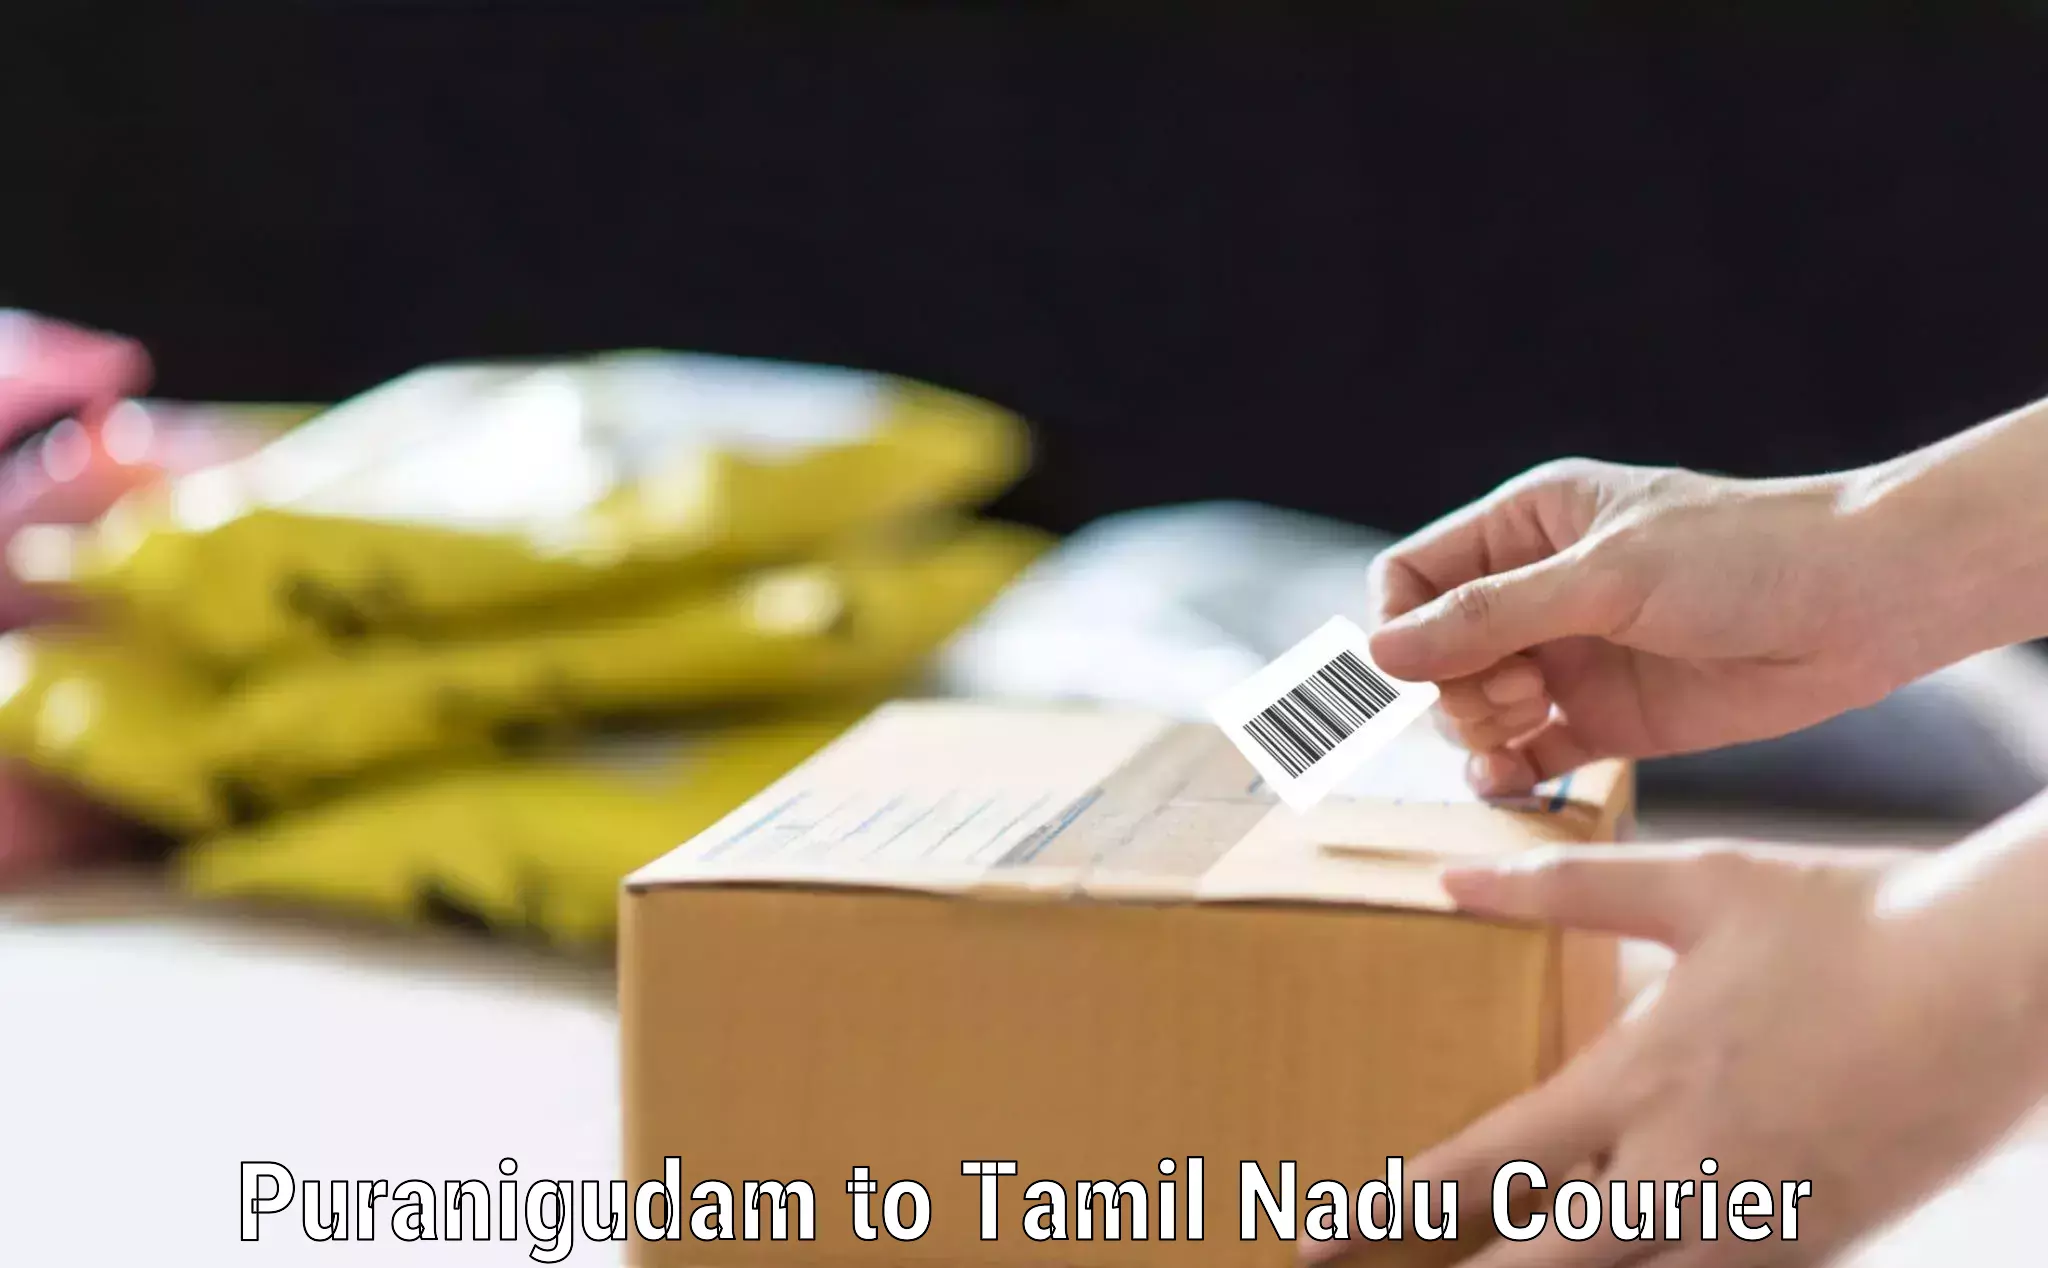 Baggage courier advice Puranigudam to University of Madras Chennai